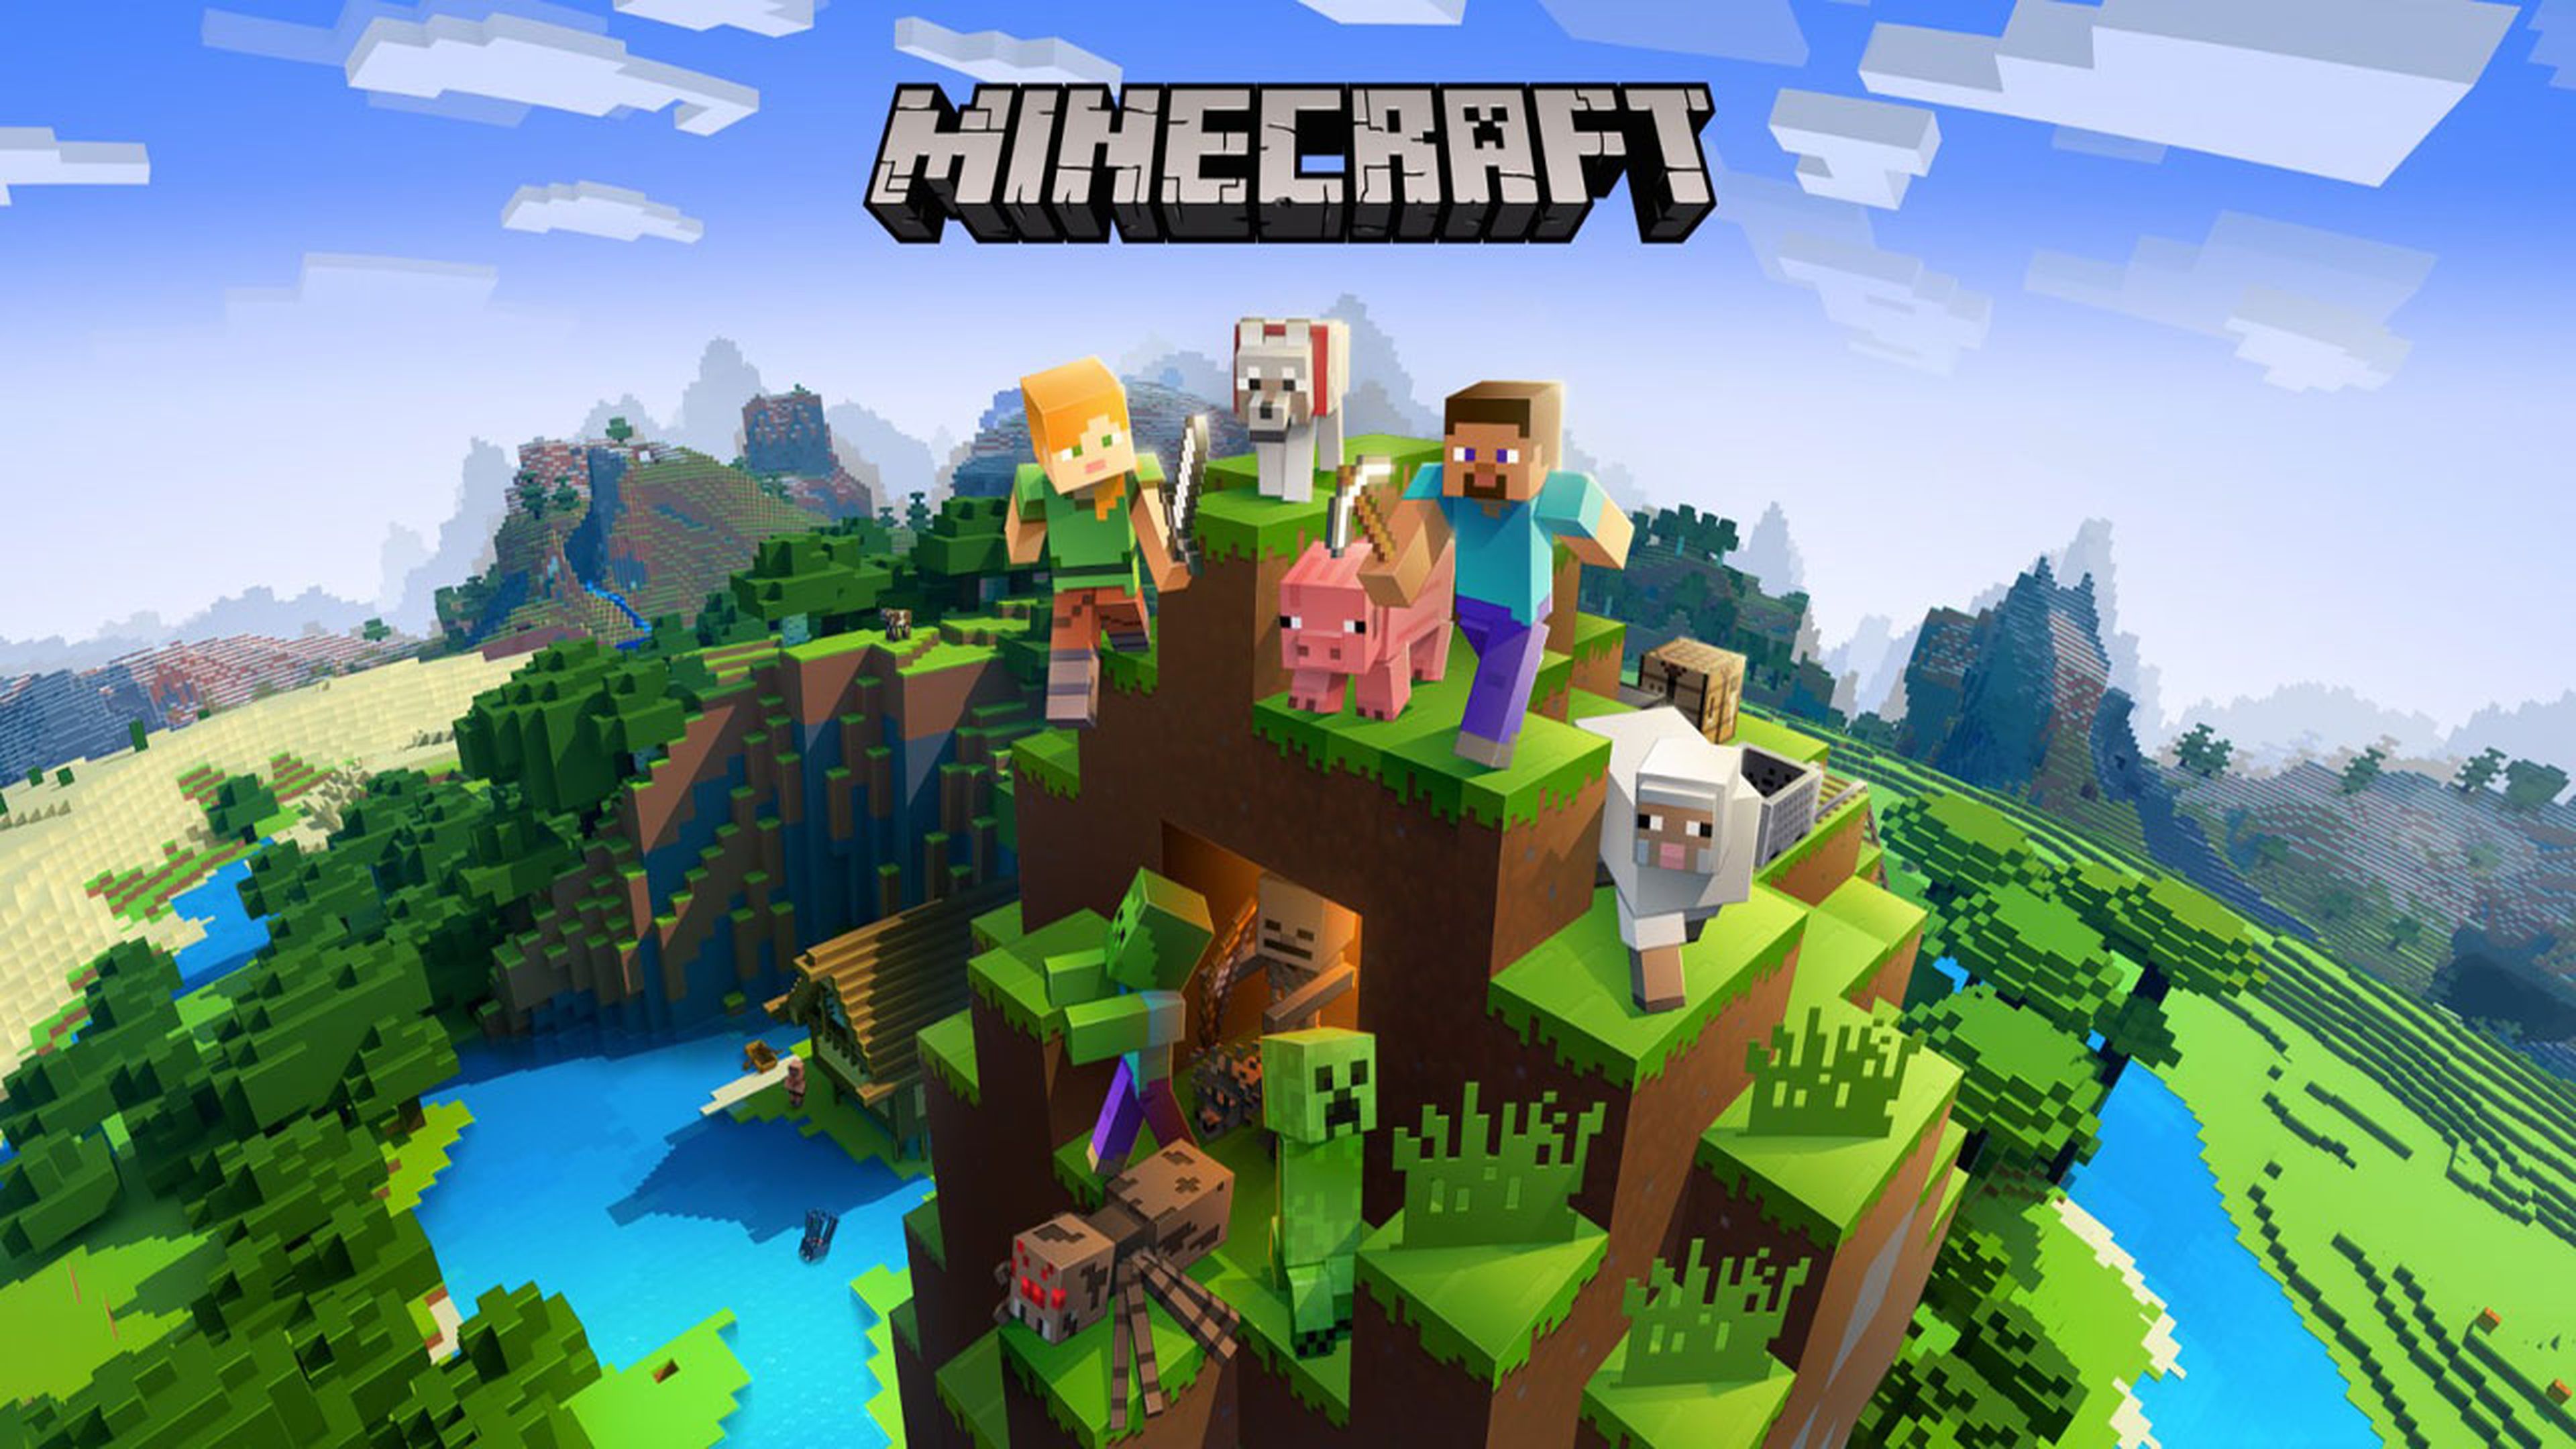 Cómo jugar Minecraft gratis en PC desde el navegador sin descargar